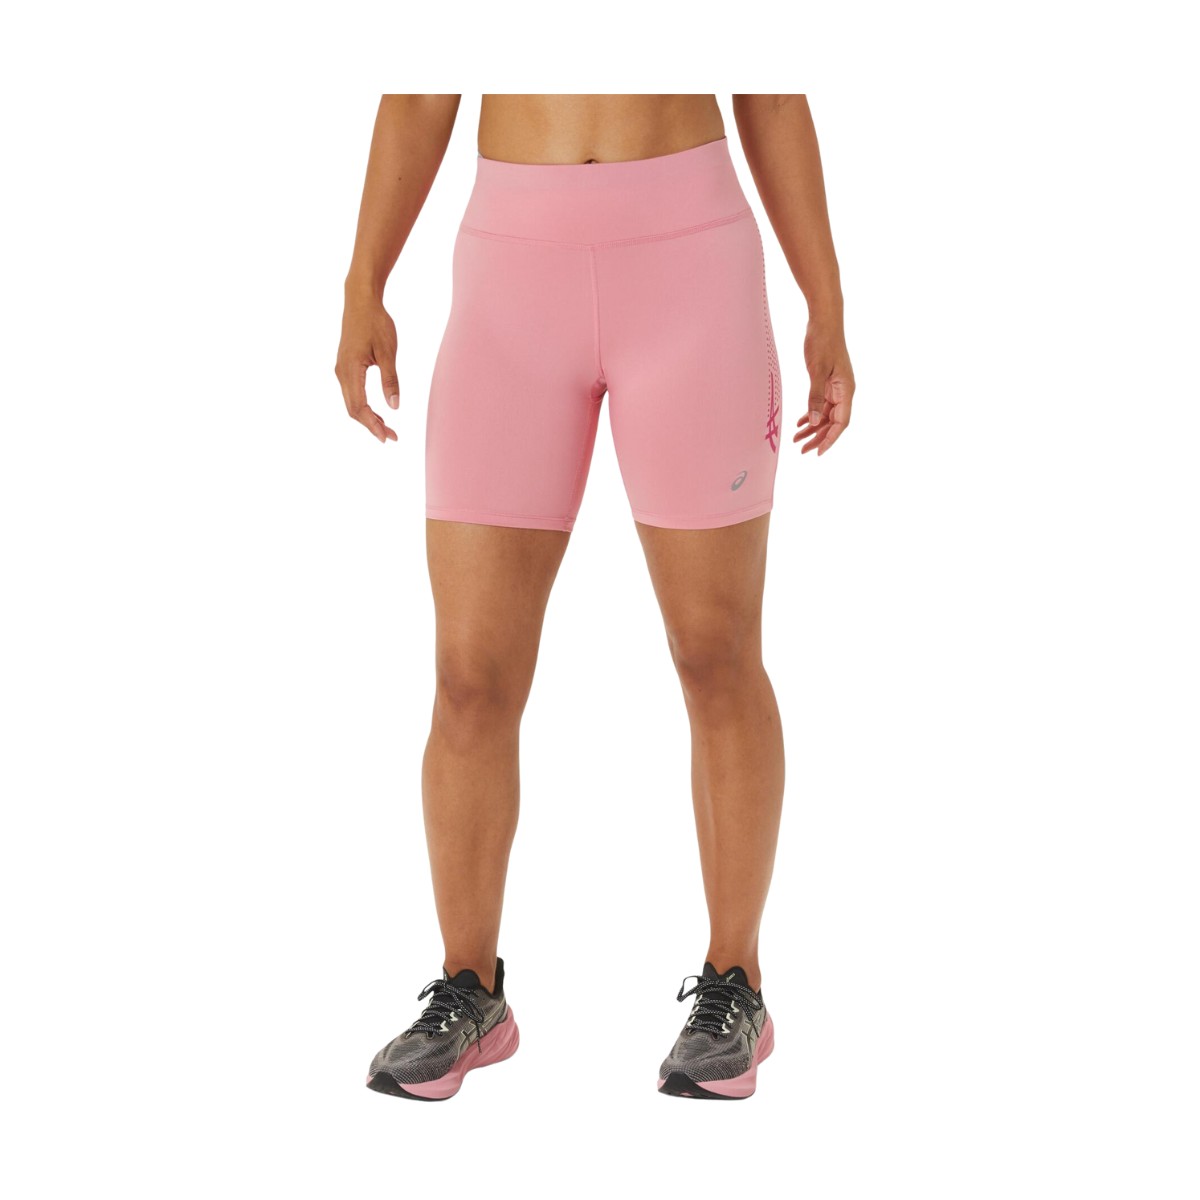 Empeorando asentamiento cemento Oferta Pantalones cortos Asics iCON Sprinter Rosa Mujer | Mejor precio